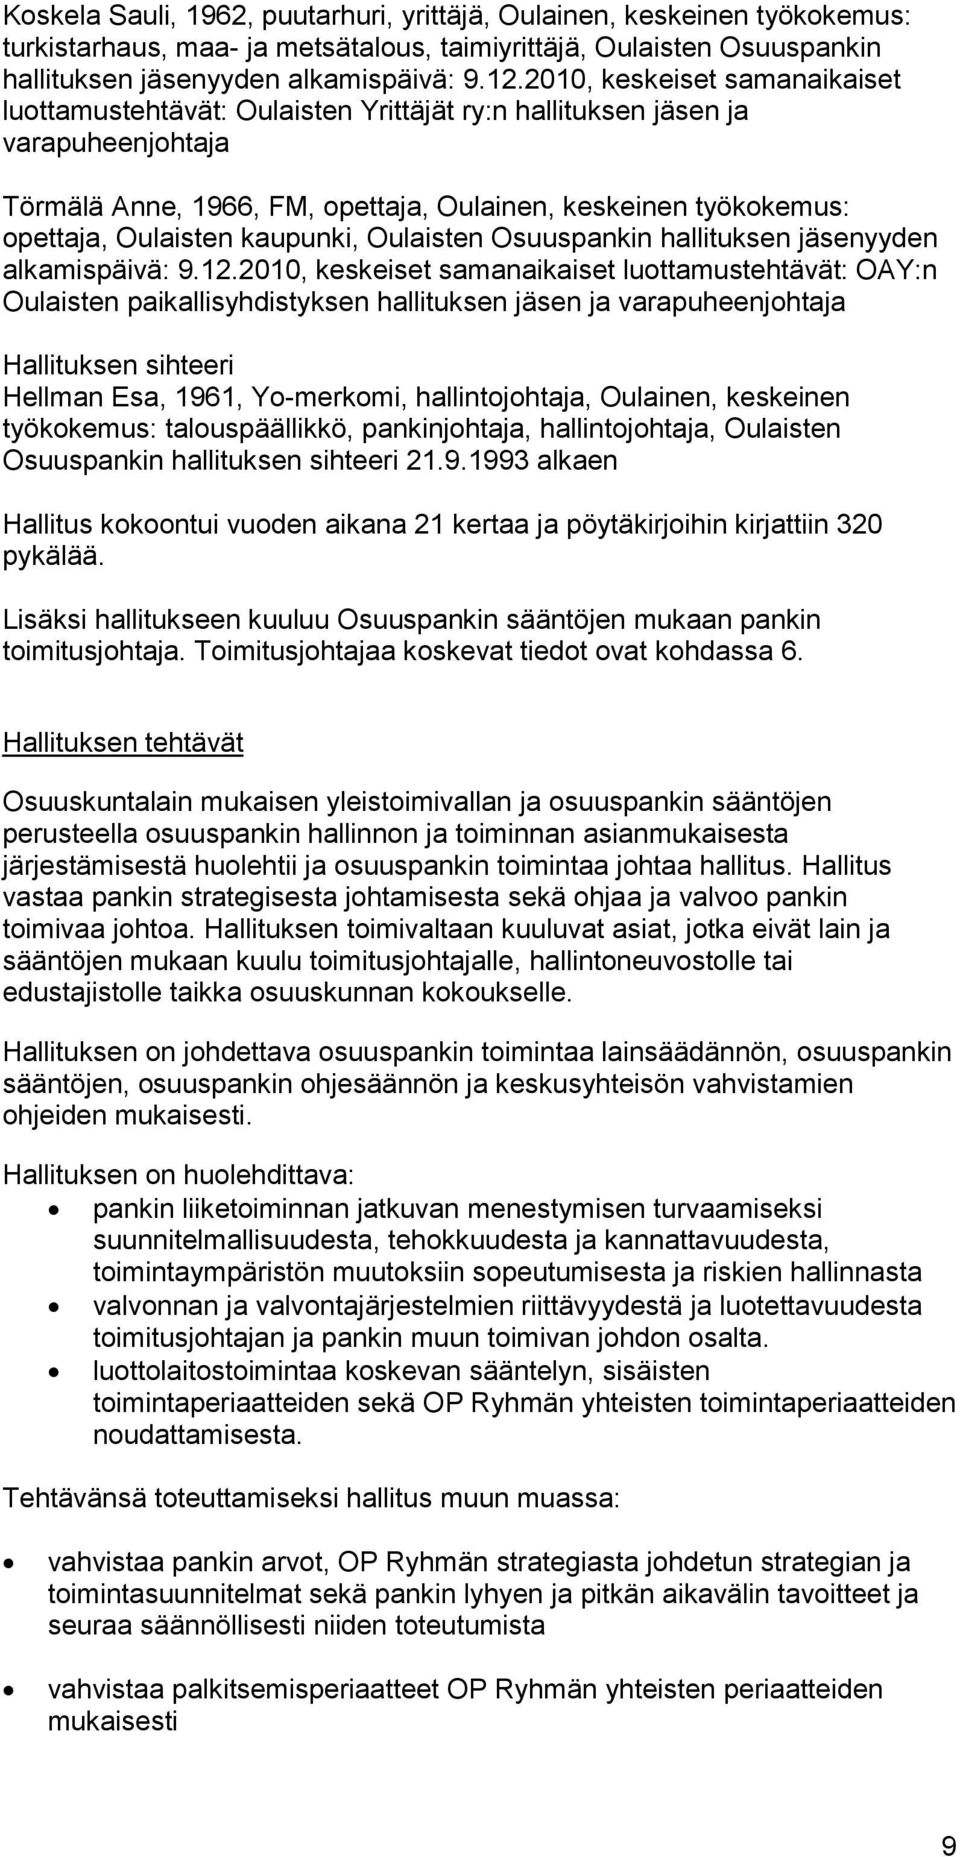 kaupunki, Oulaisten Osuuspankin hallituksen jäsenyyden alkamispäivä: 9.12.